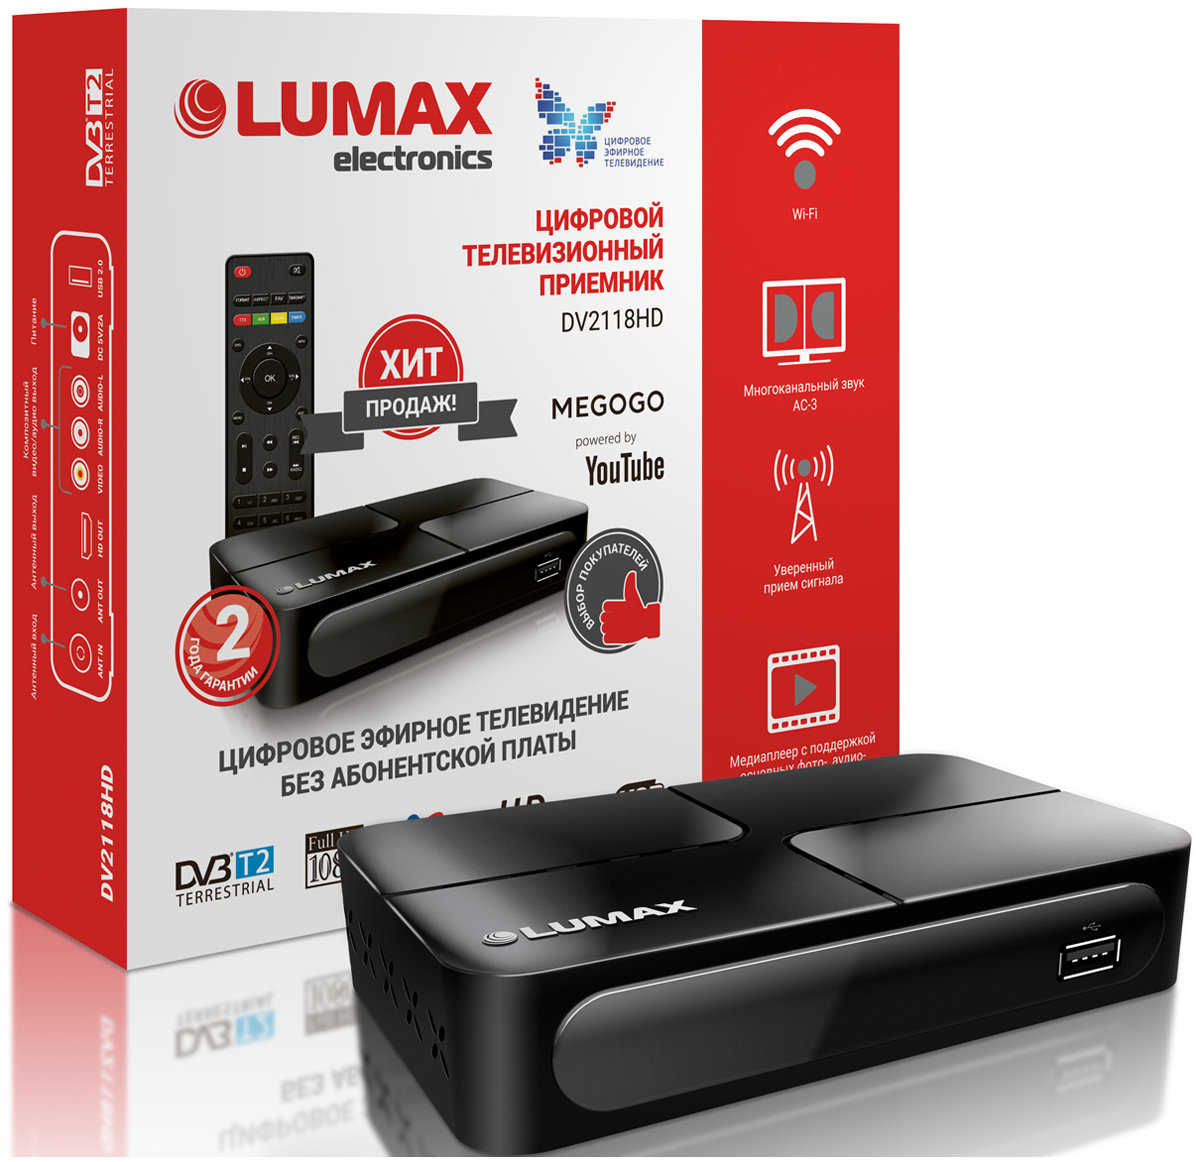 цена Цифровой телевизионный ресивер Lumax DV 2118 HD